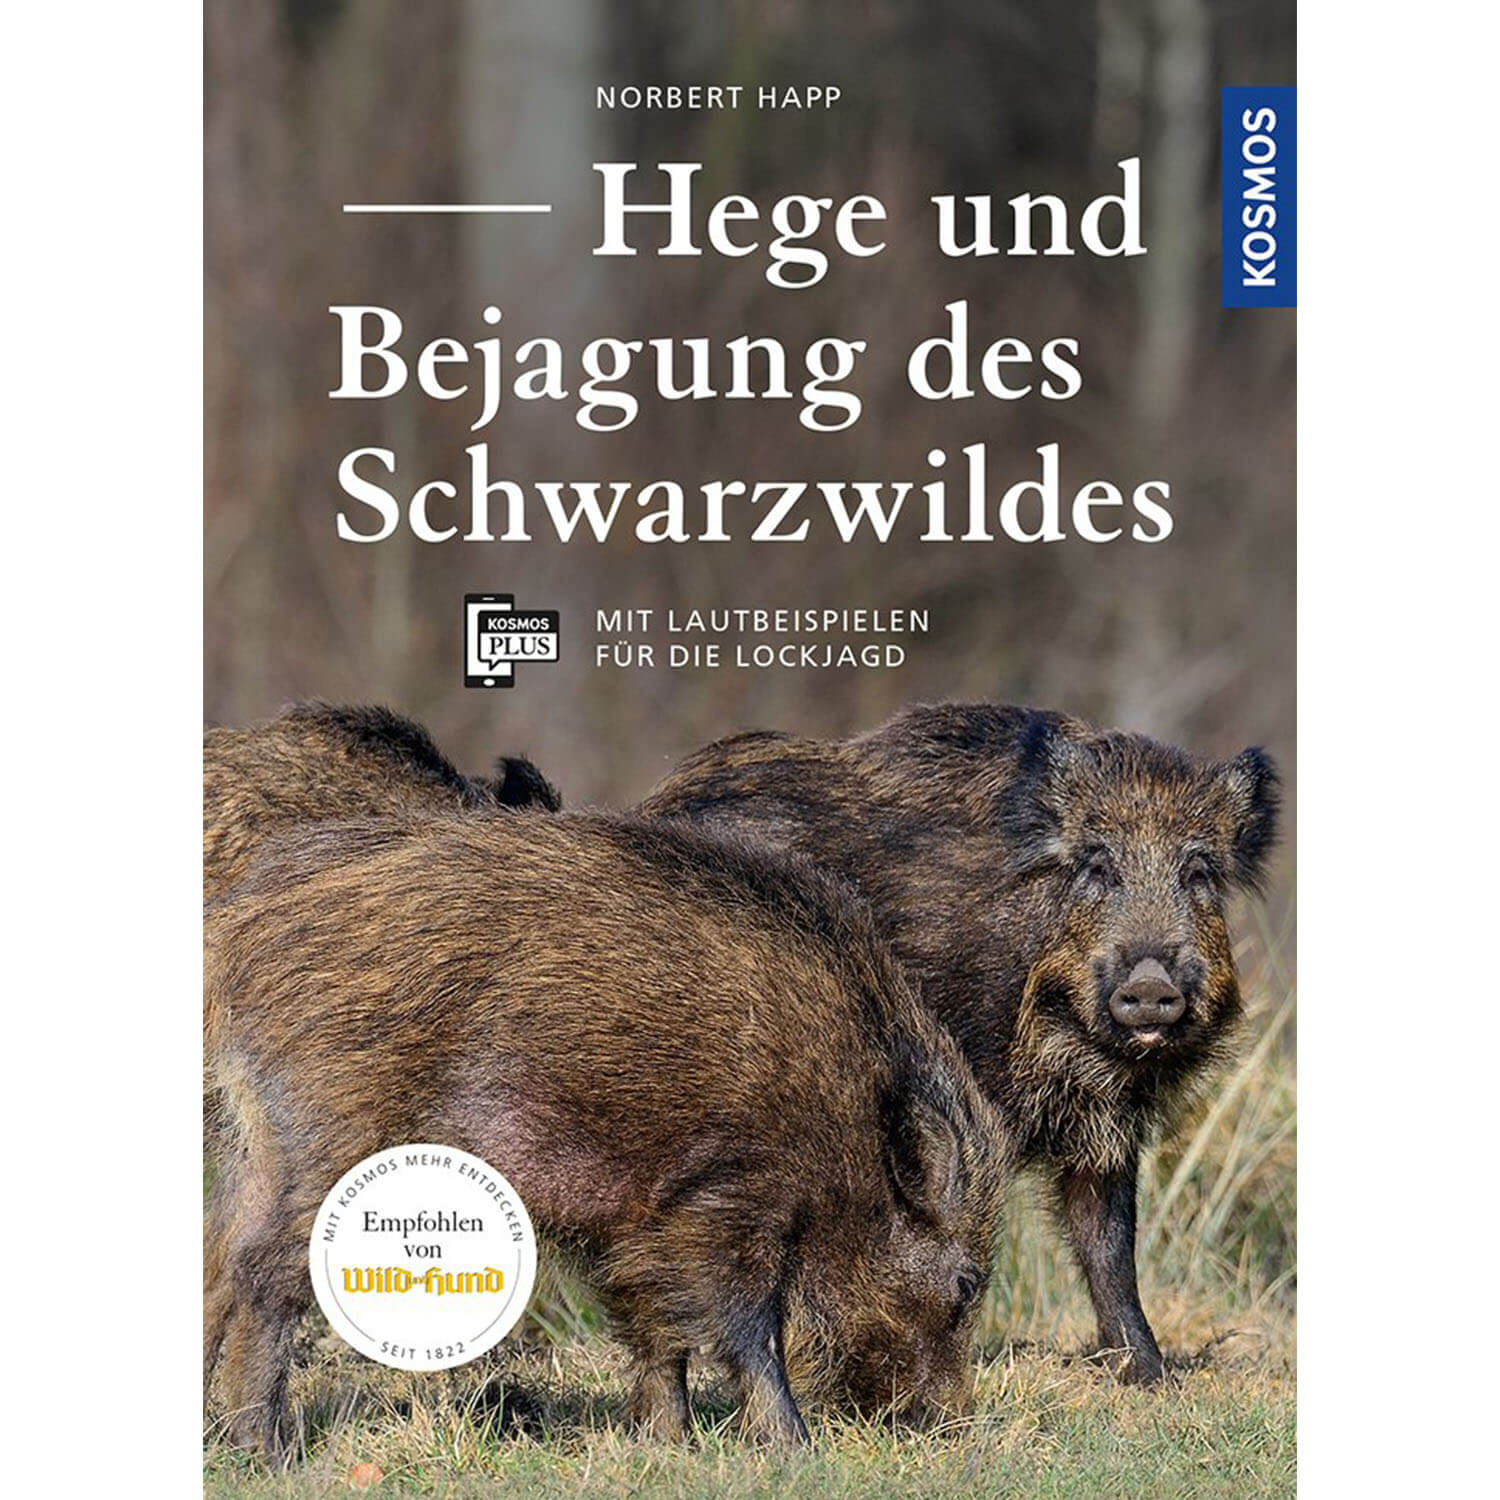 Hege und Bejagung des Schwarzwildes - Buch - Norbert Happ - Jagdausrüstung